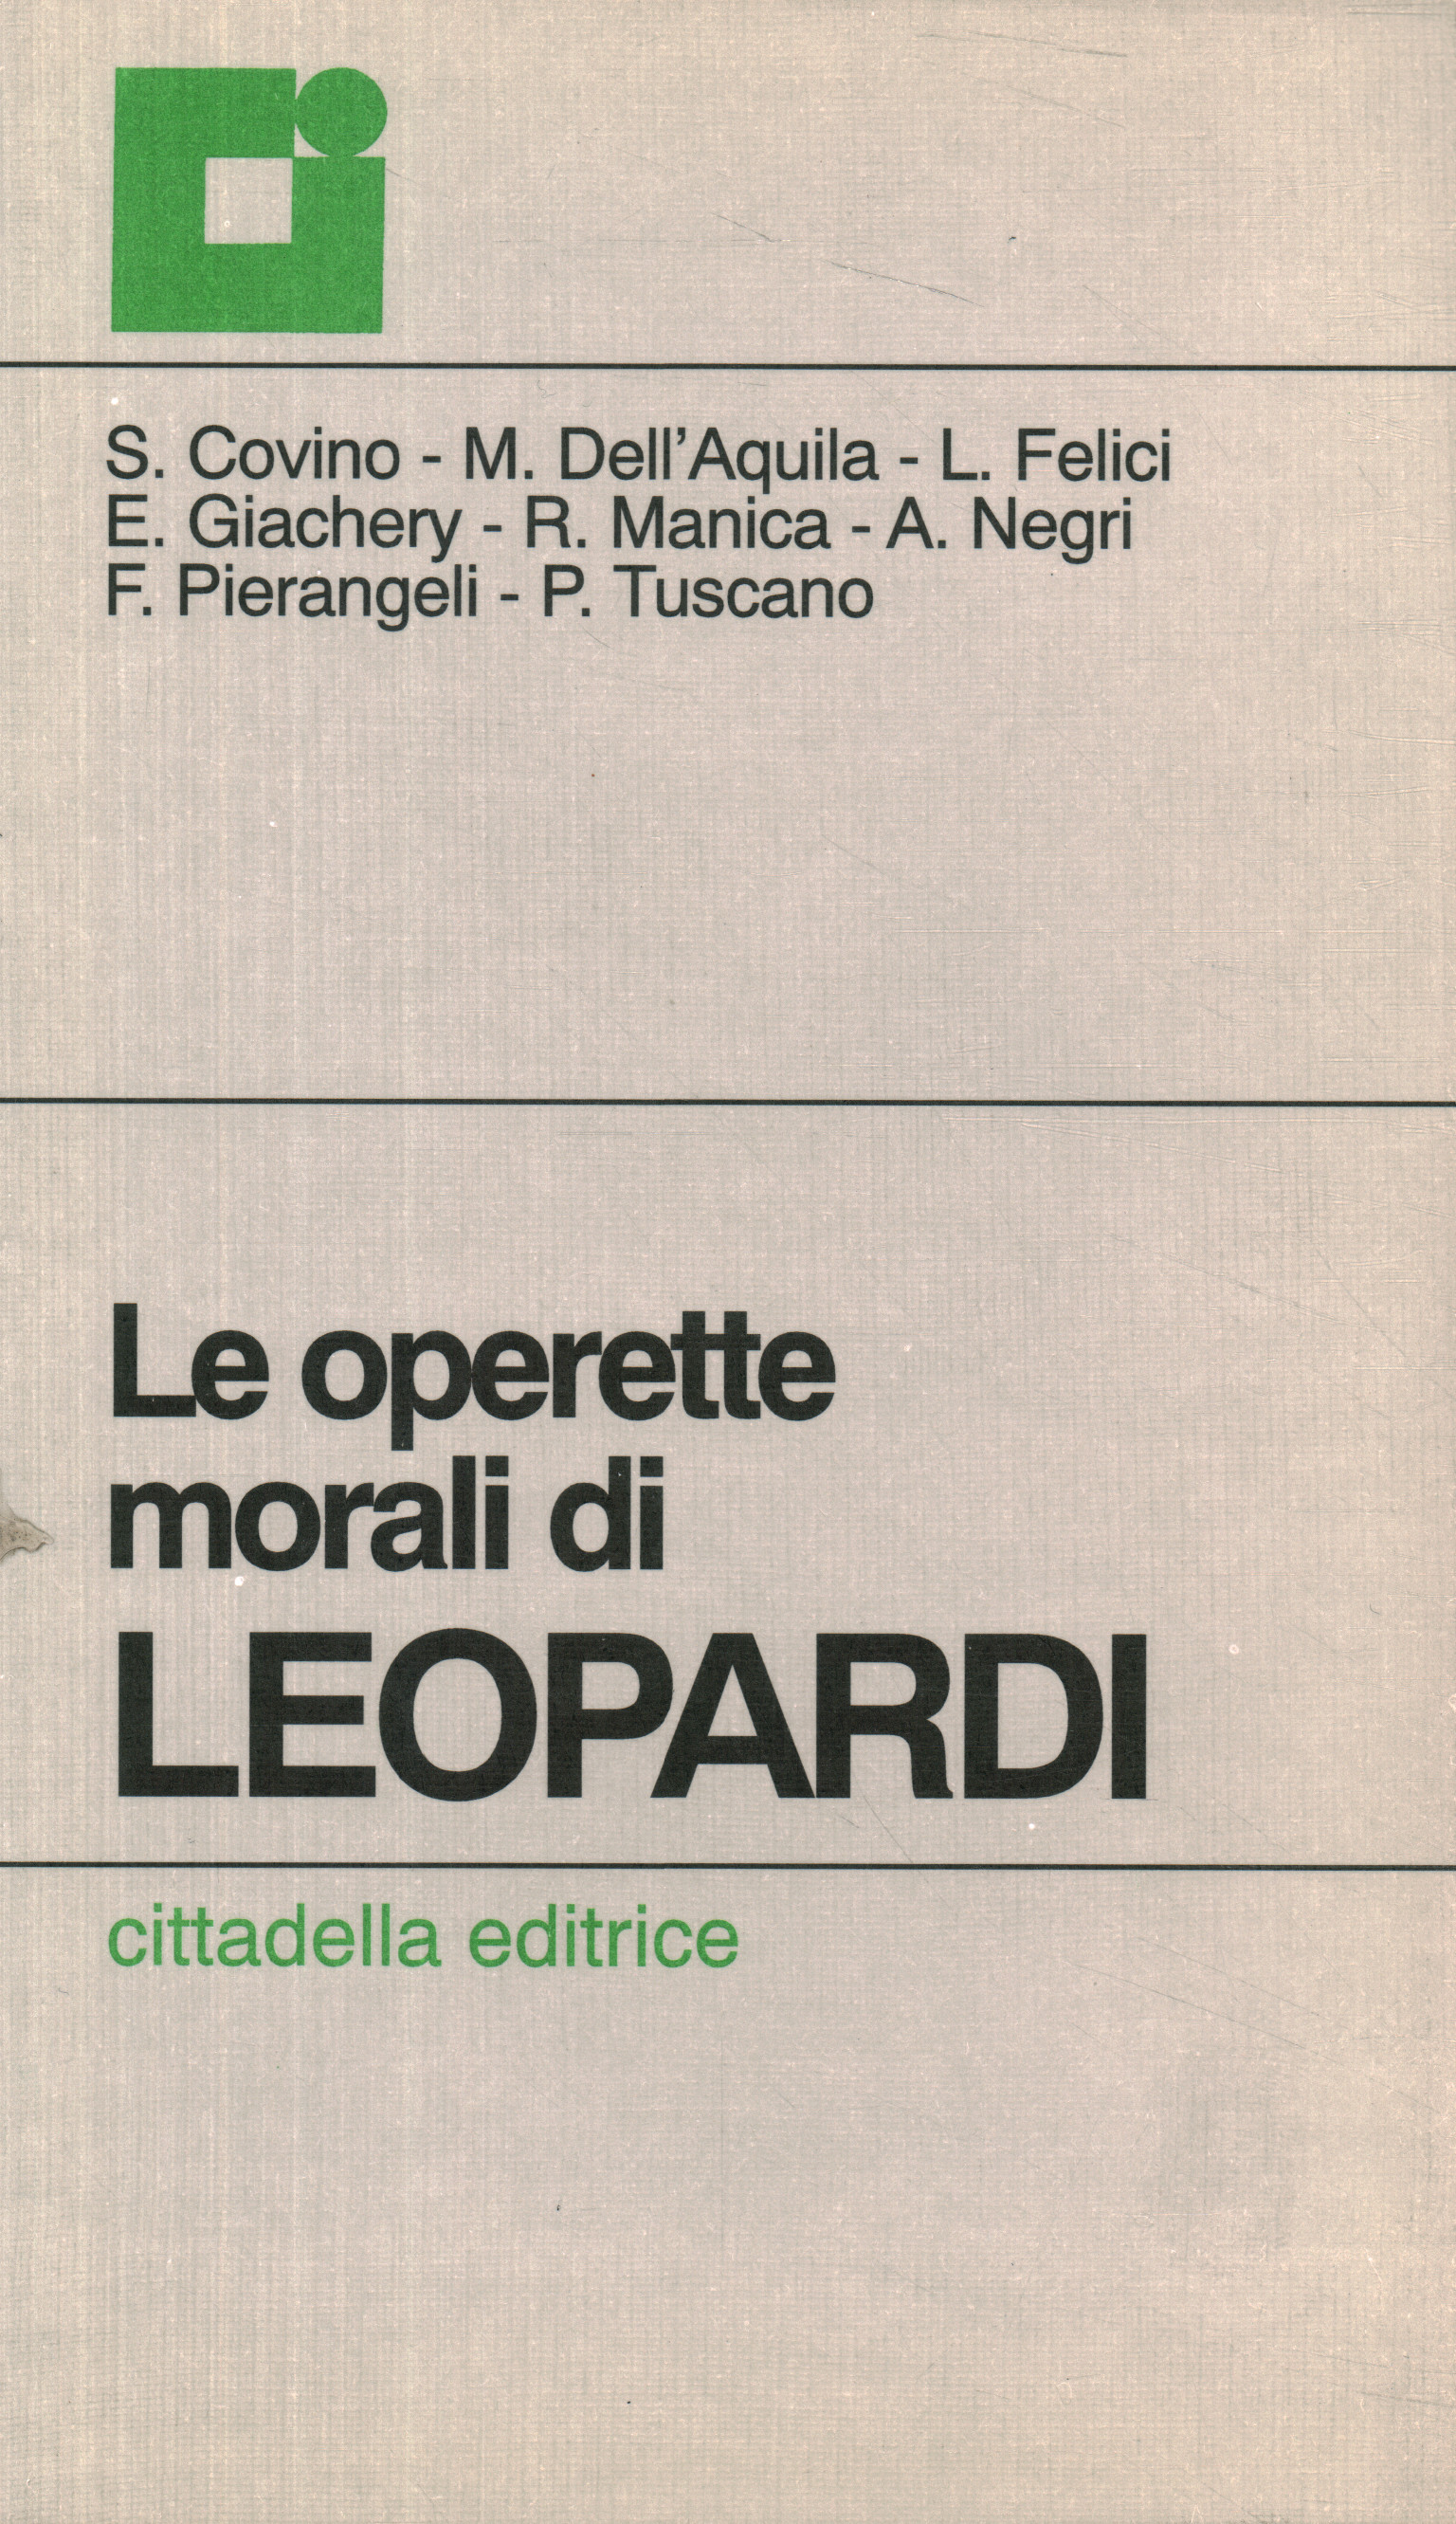 Leopardi's moral operettas